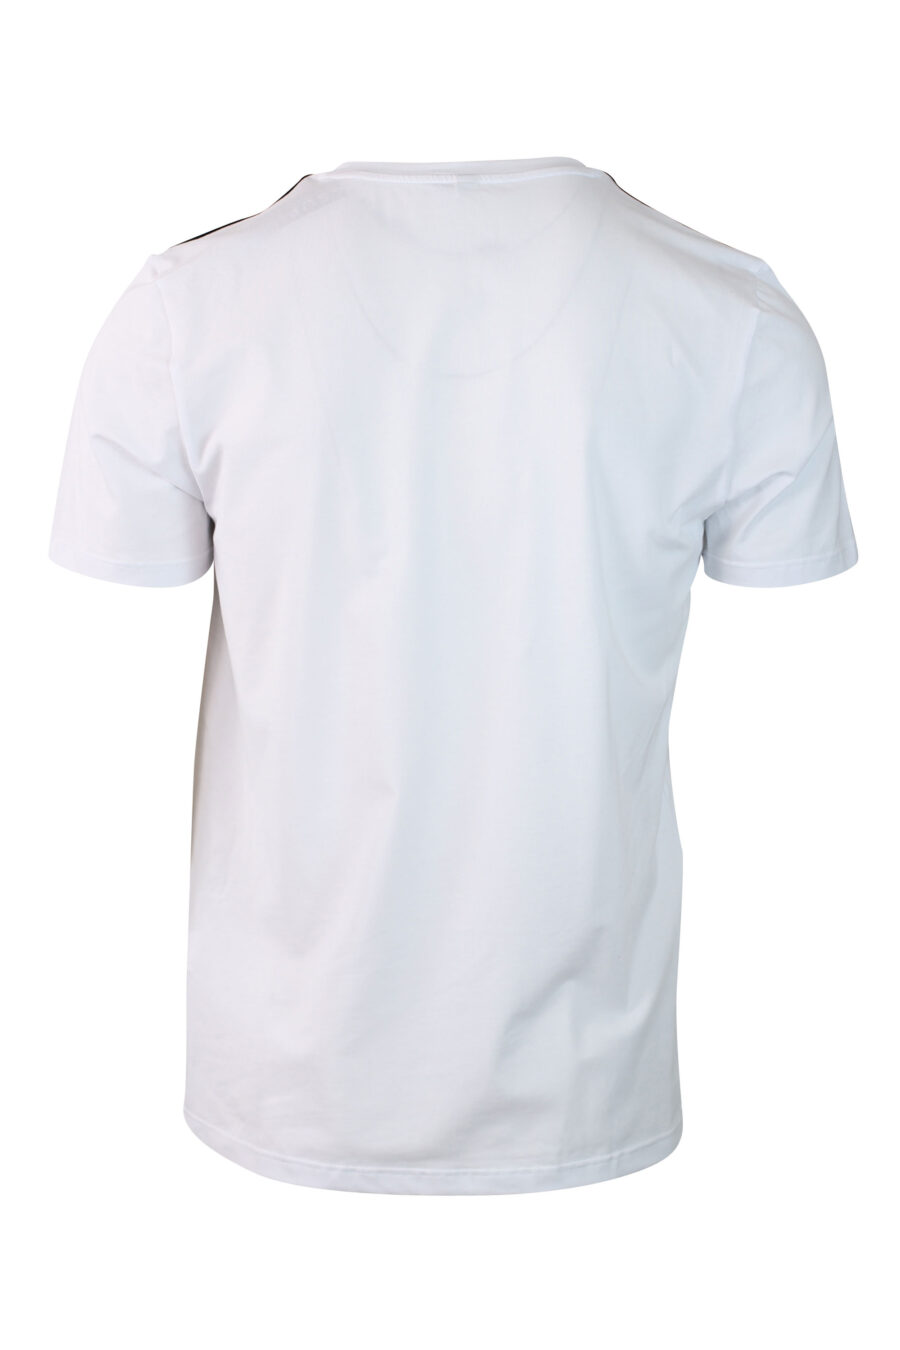 Conjunto de duas T-shirts brancas com faixa de ombro com logótipo - IMG 0133